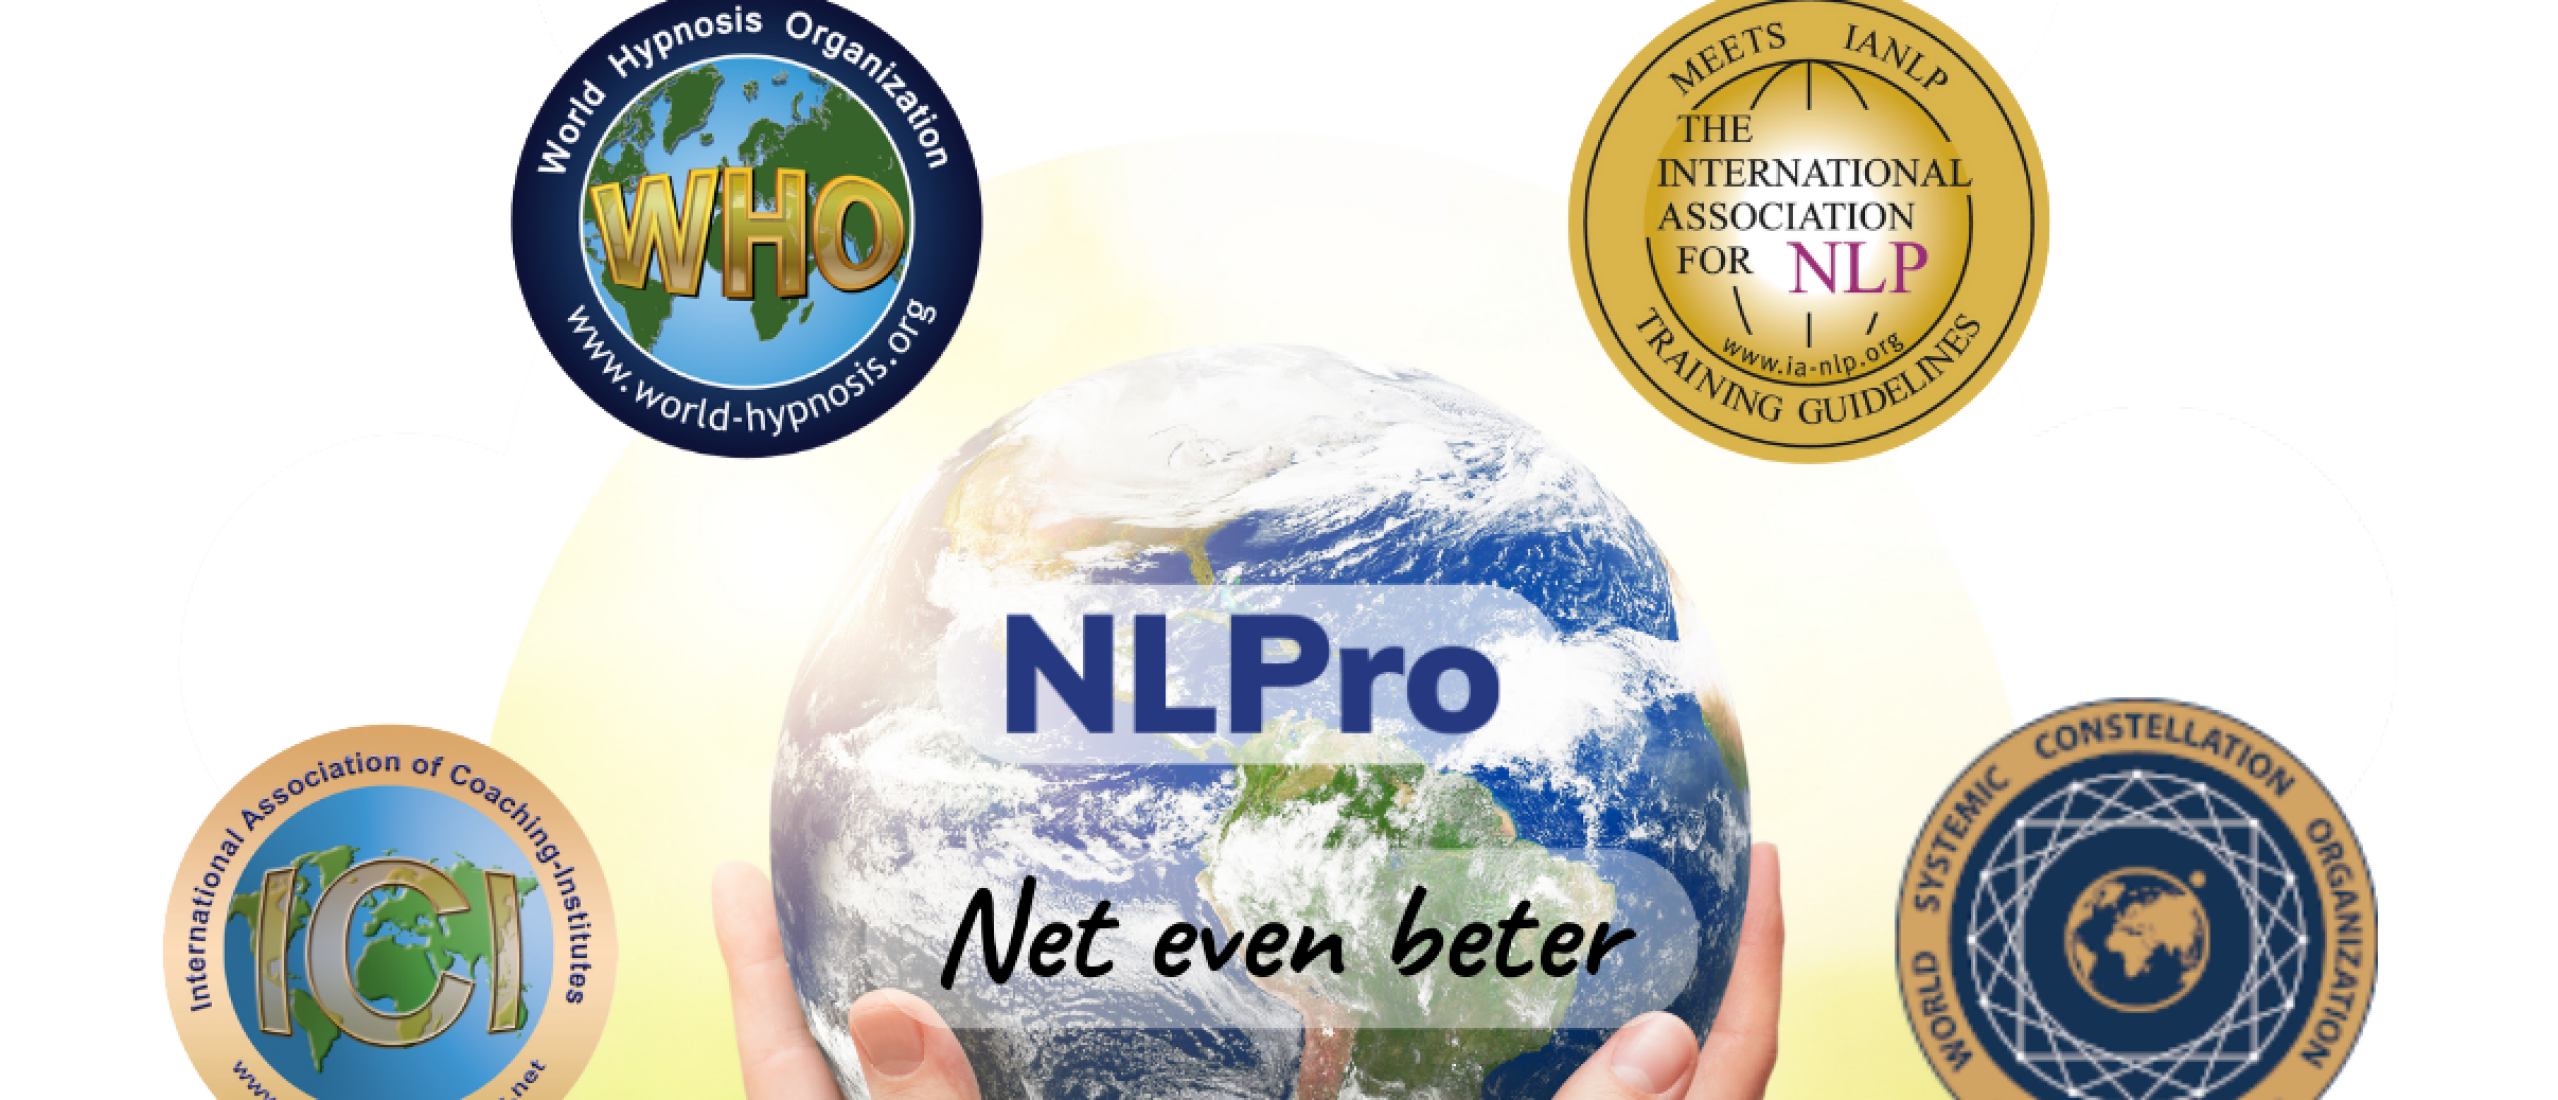 NLPRO staat voor NLP Professional.